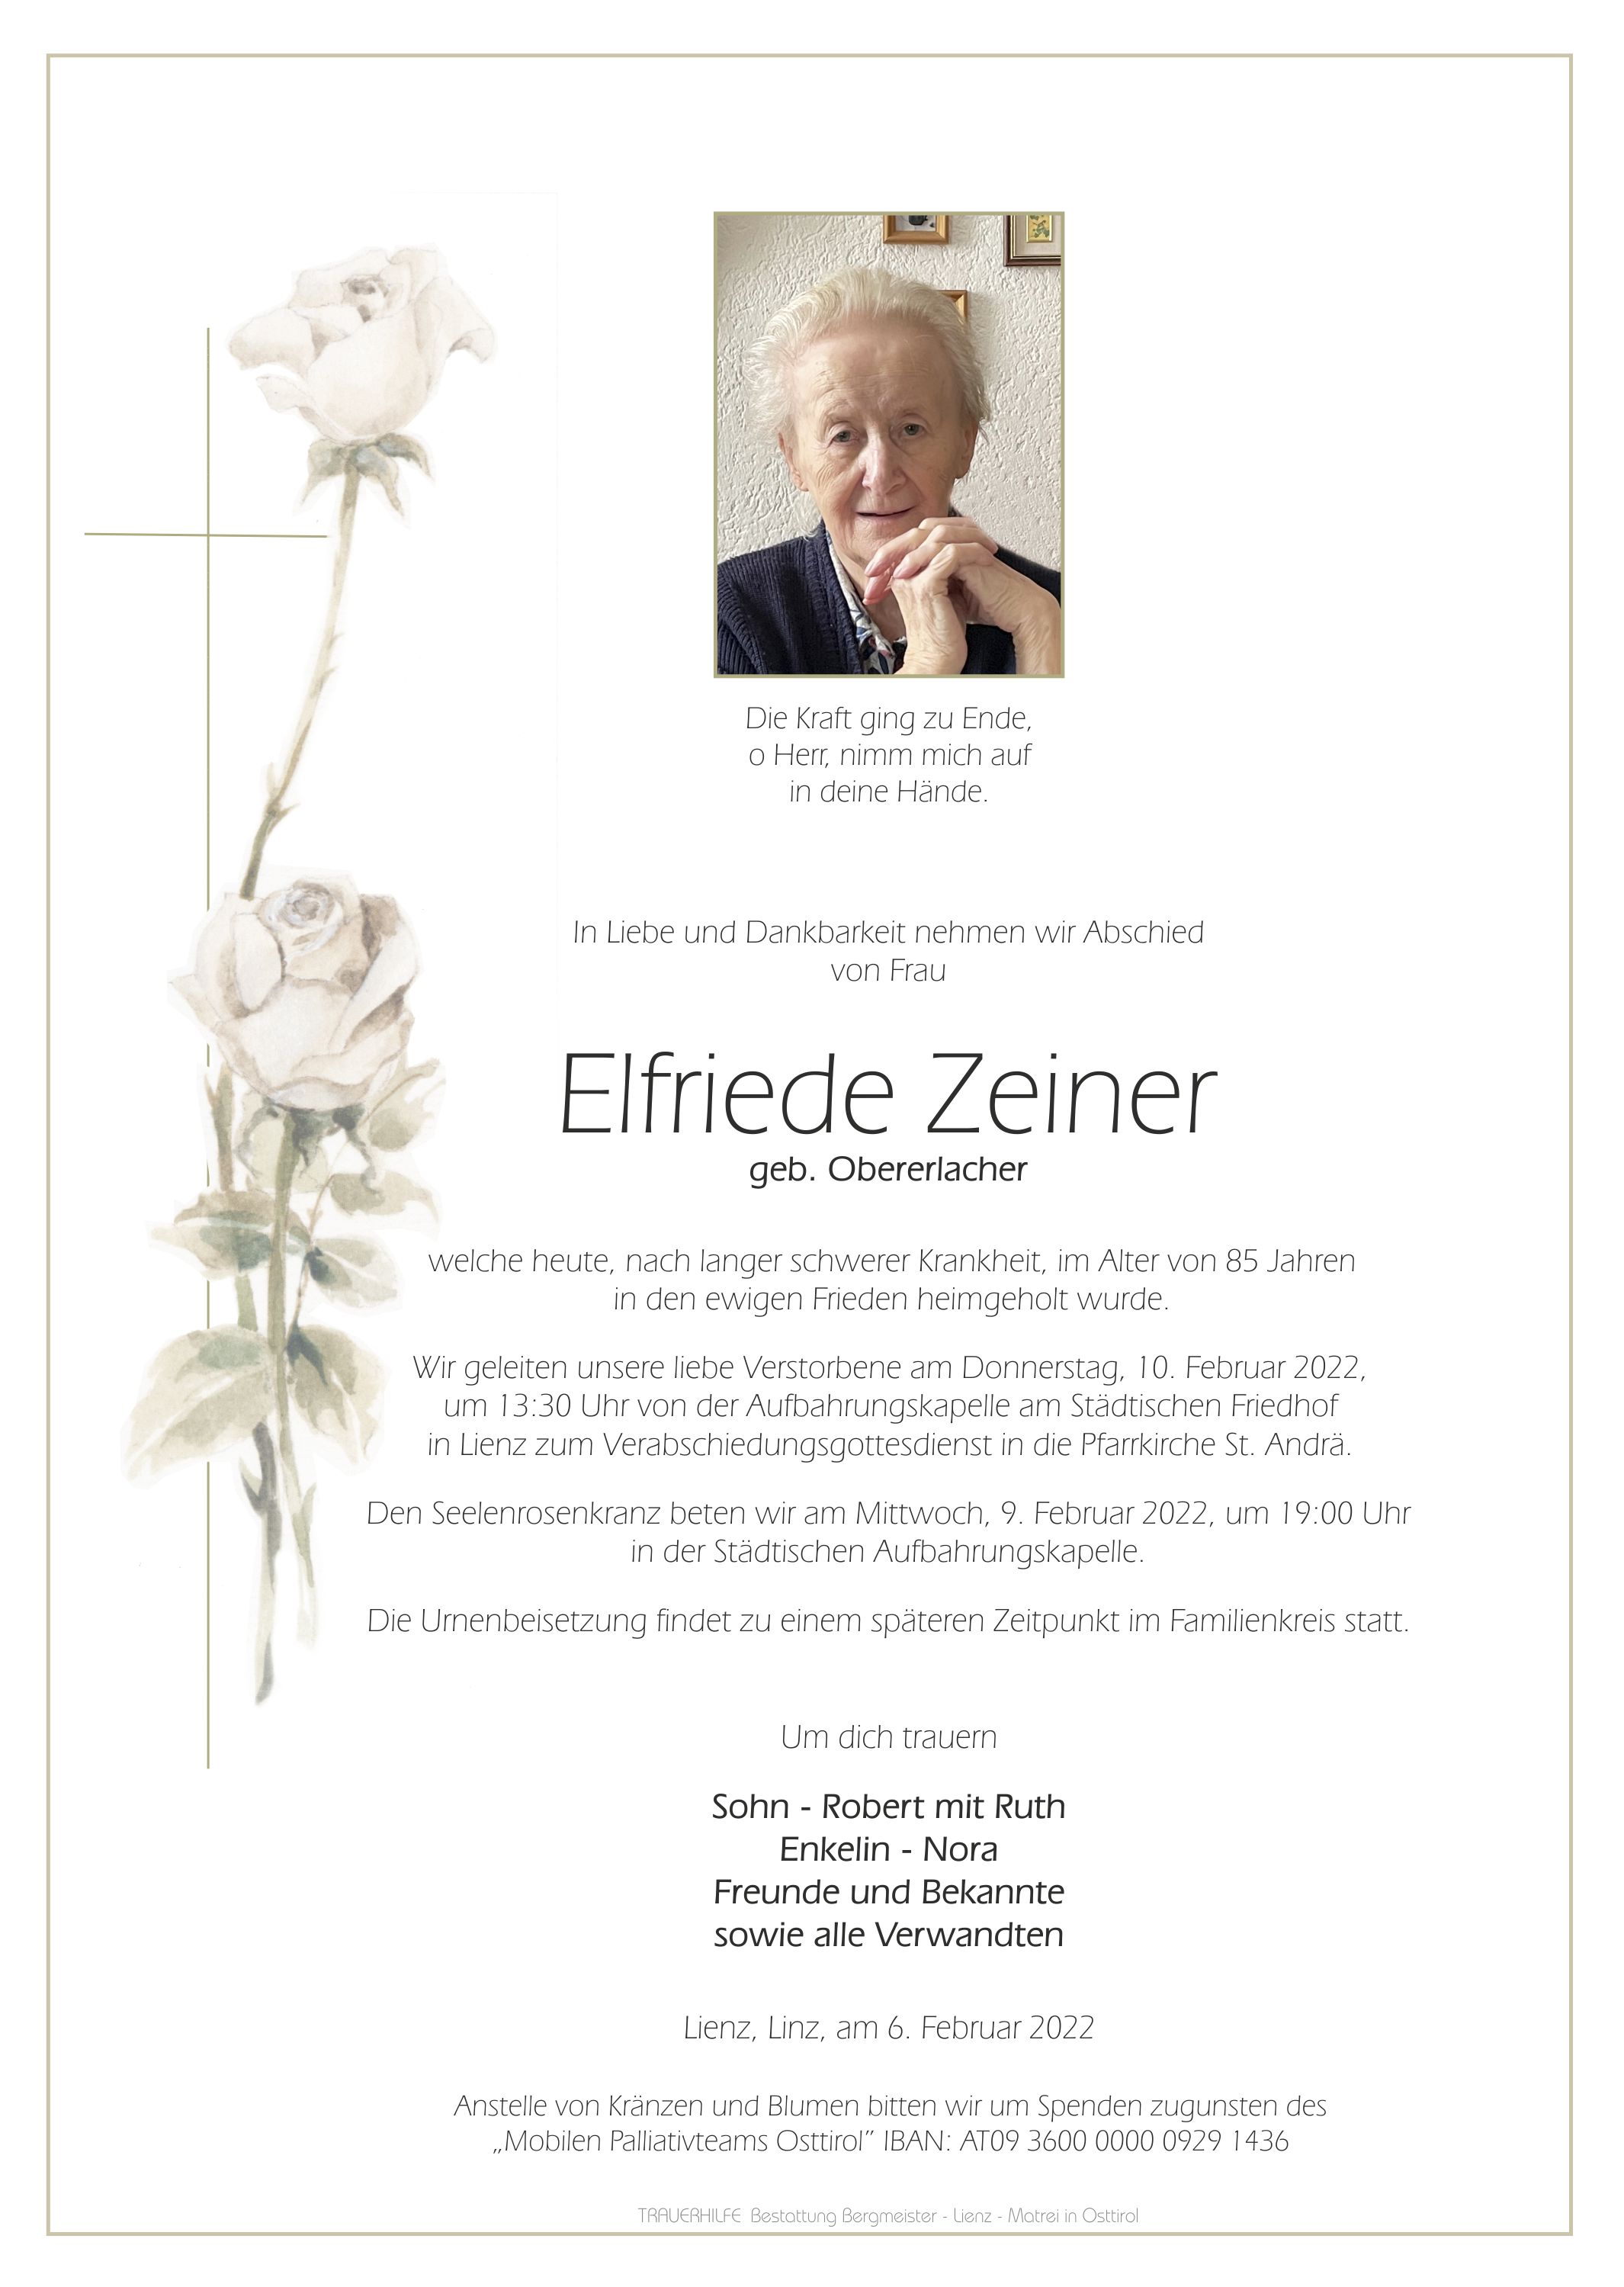 Elfriede Zeiner